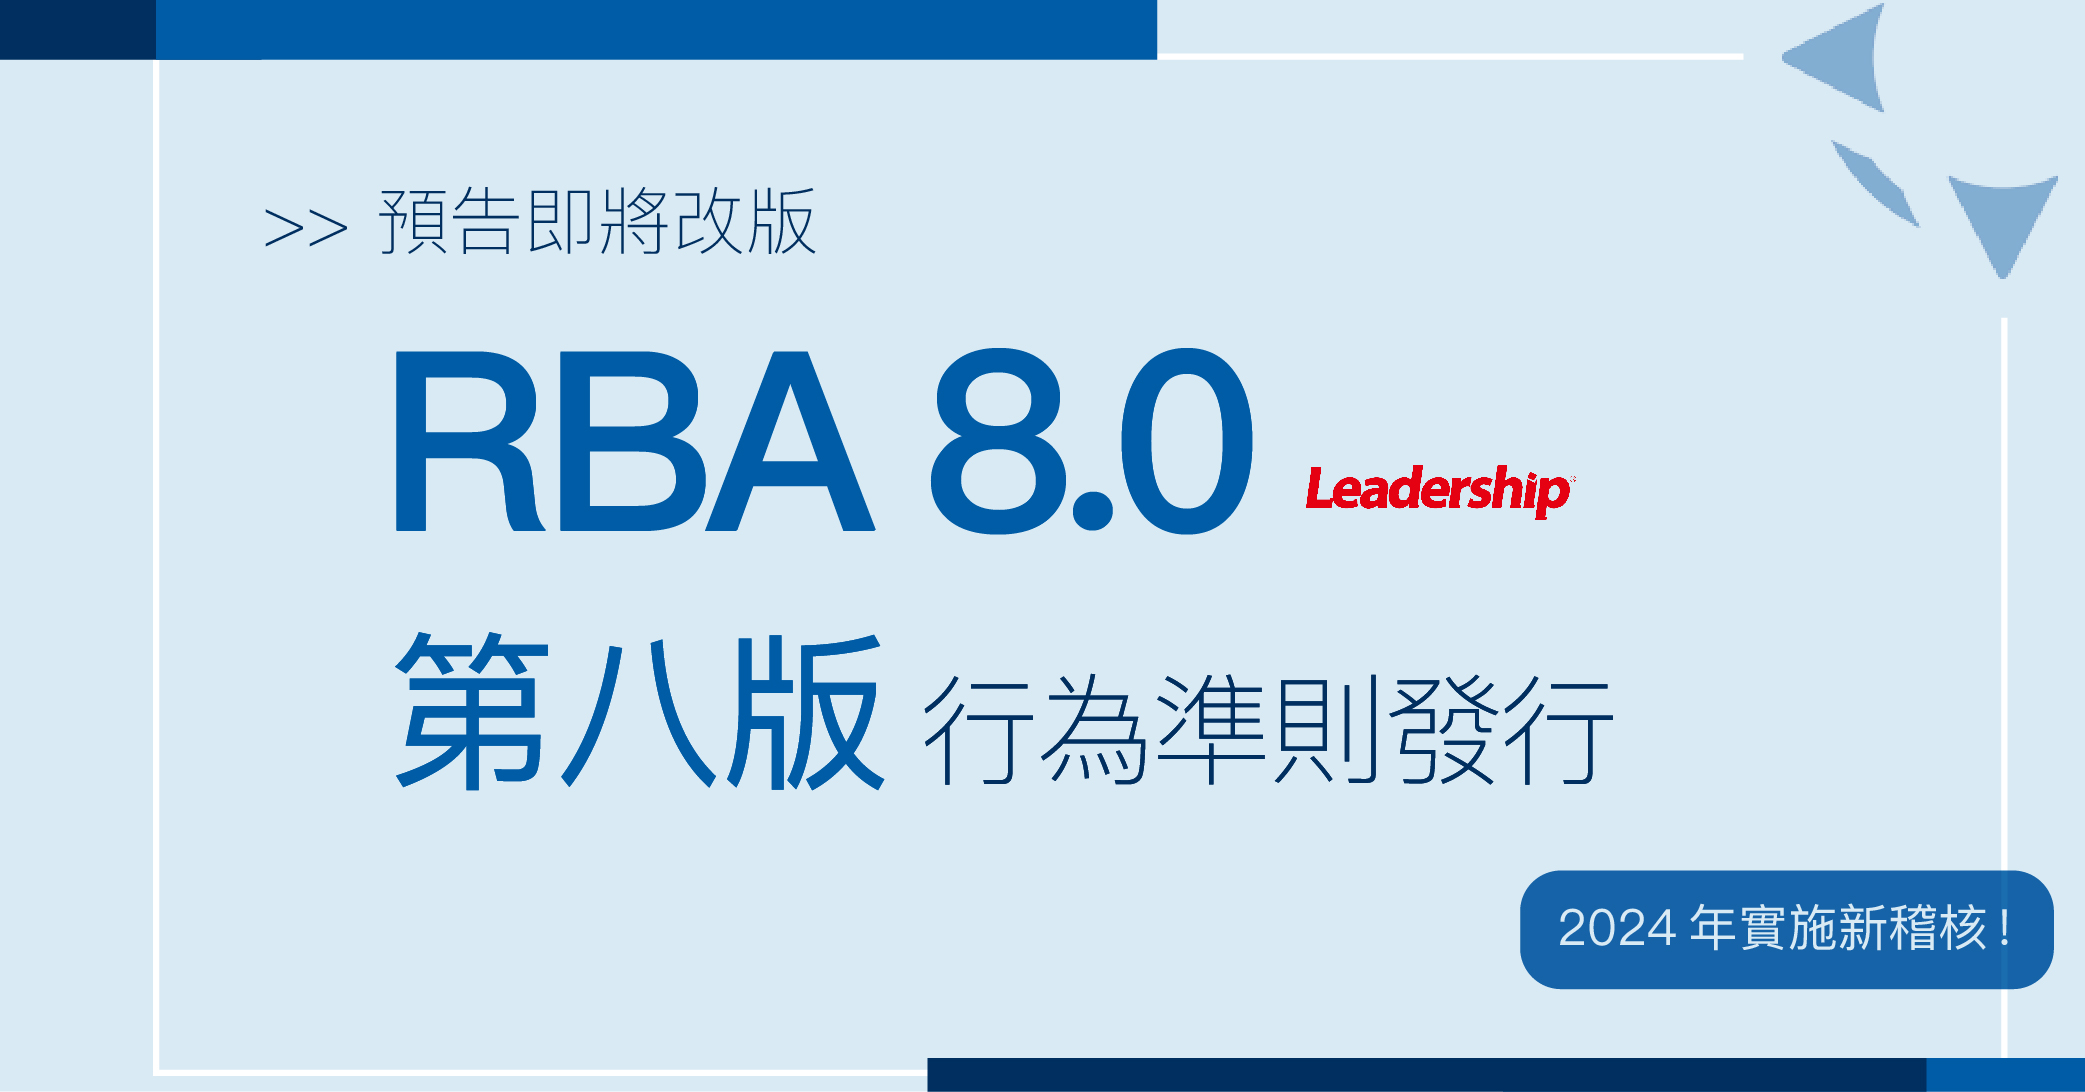 【 預告 】2024 年起實施 RBA 8.0 新稽核！